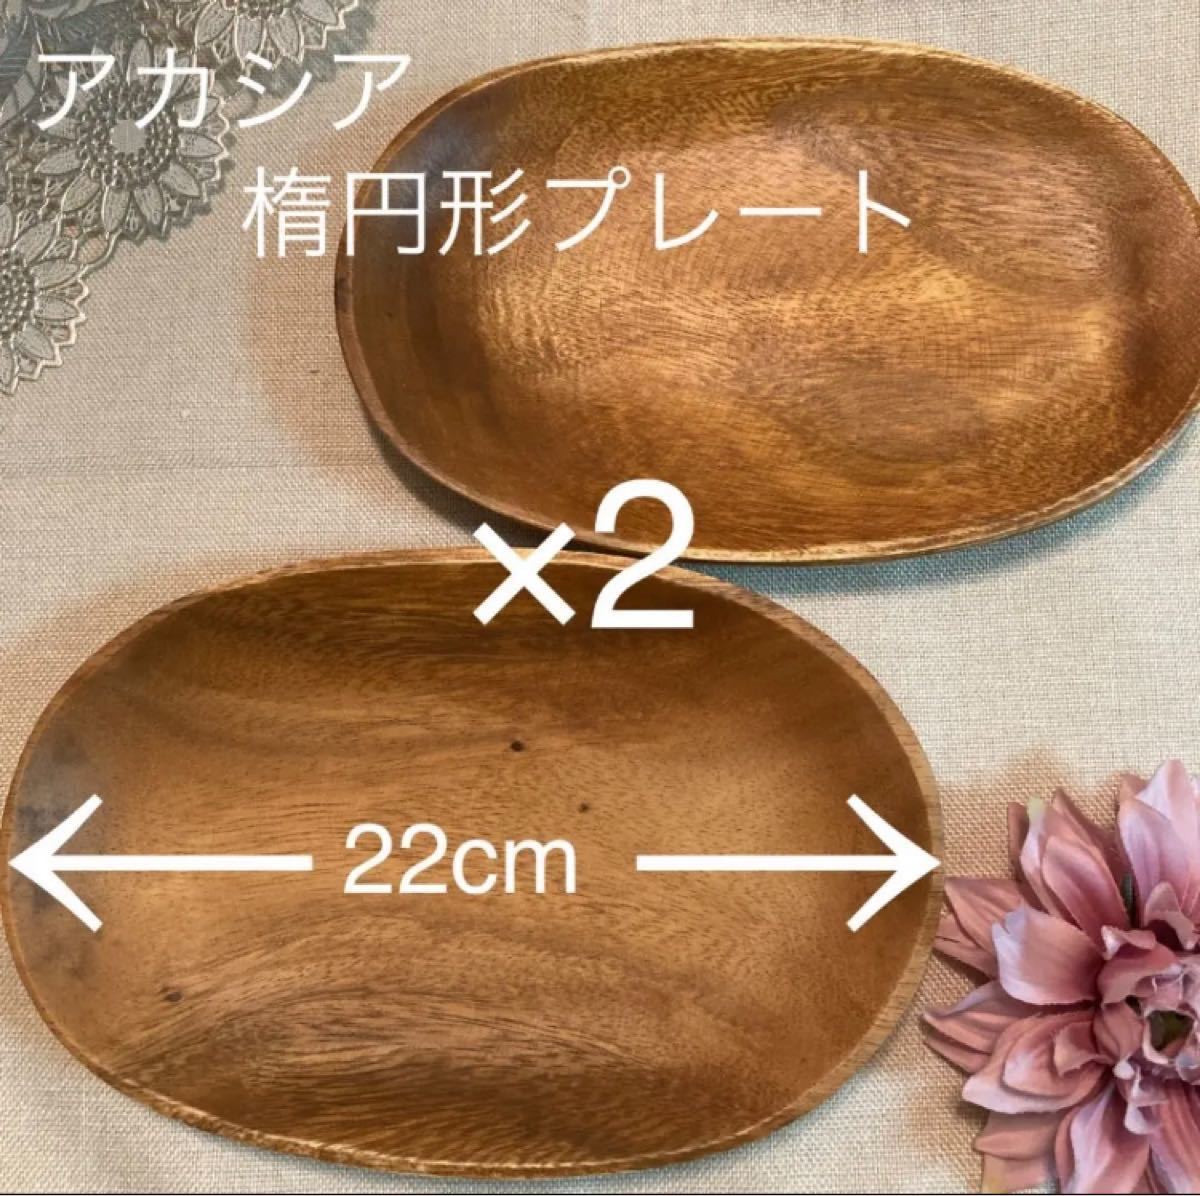 アカシア 楕円形プレート22cm×2枚セット 新品 ワンプレート 木製トレー 木のトレー 木のお皿 木製食器